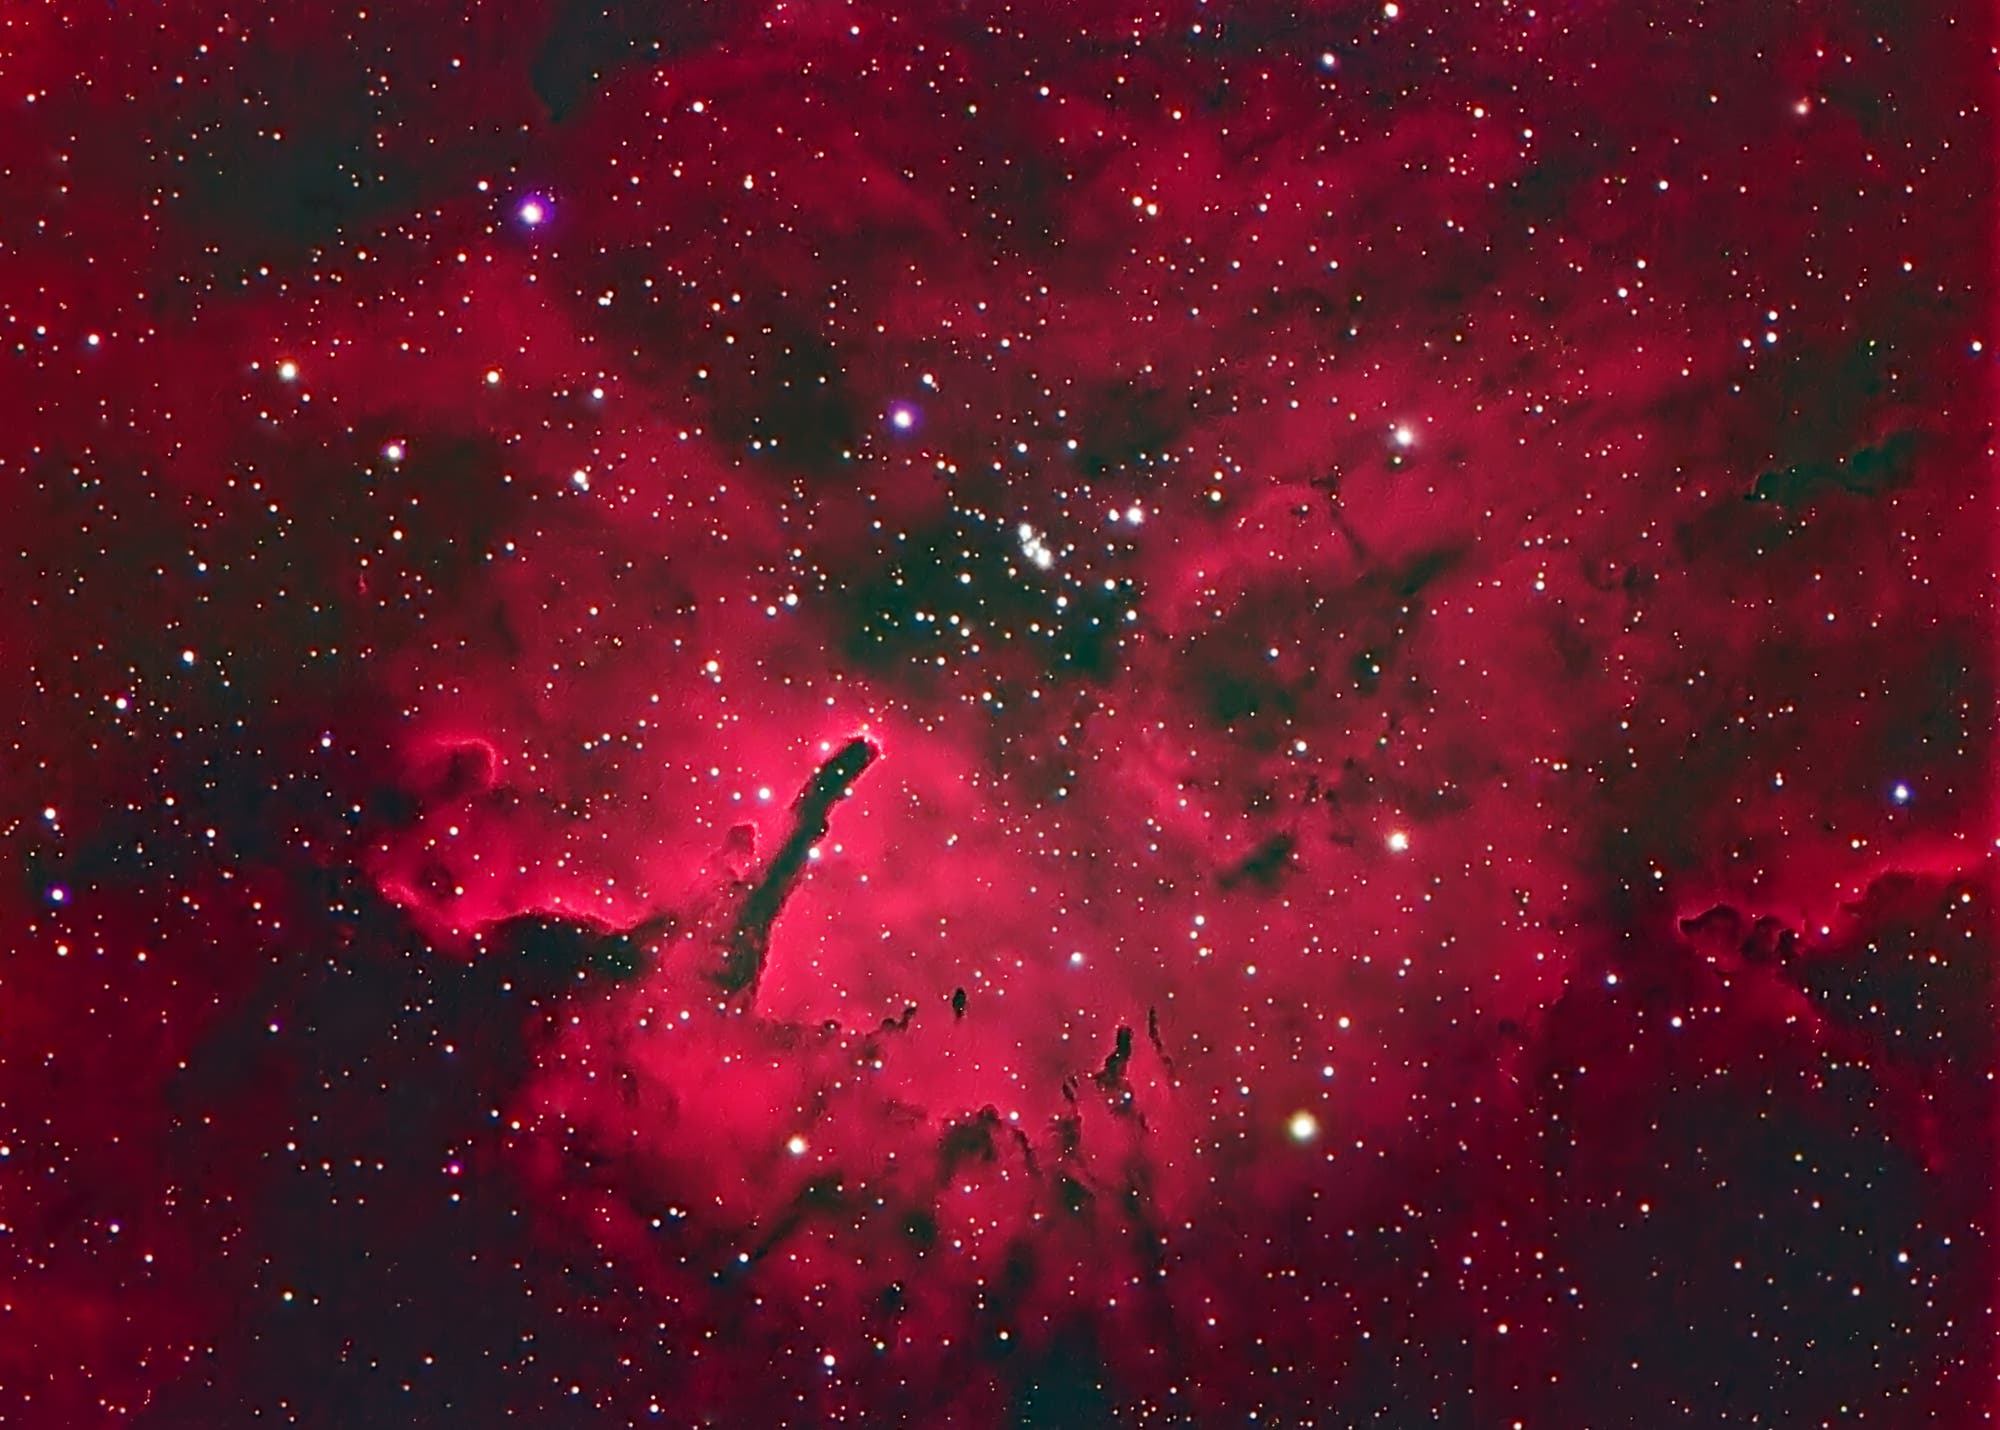 NGC 6820/6823